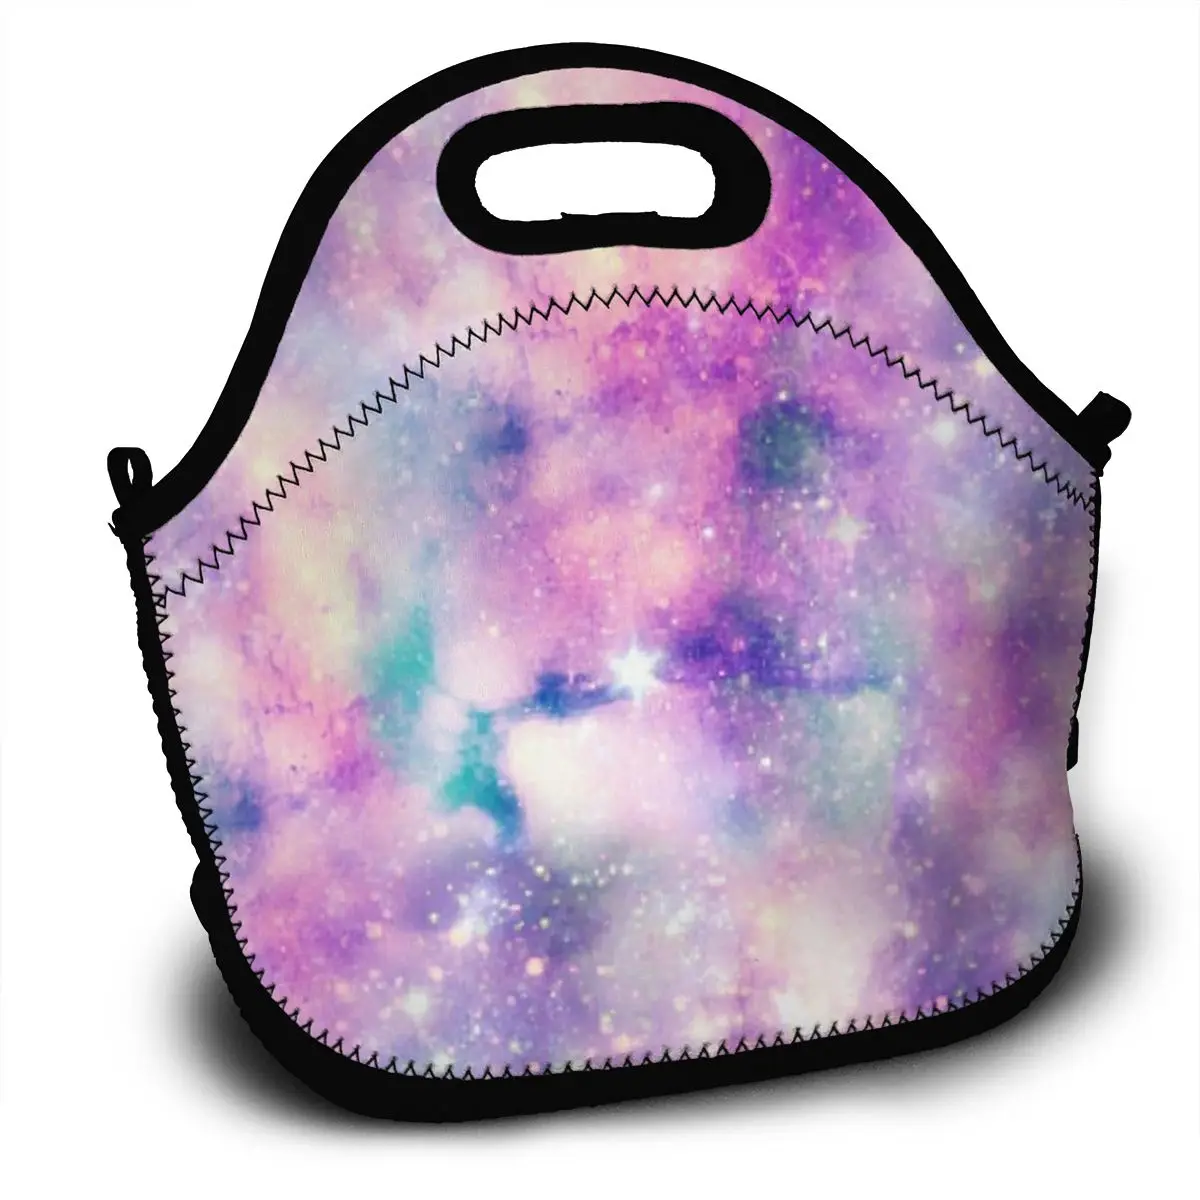 

Портативный изолированный термальный Ланч-бокс Bento со звездным галактическим единорогом, сумка для хранения пикника, сумка, сумки для ланча